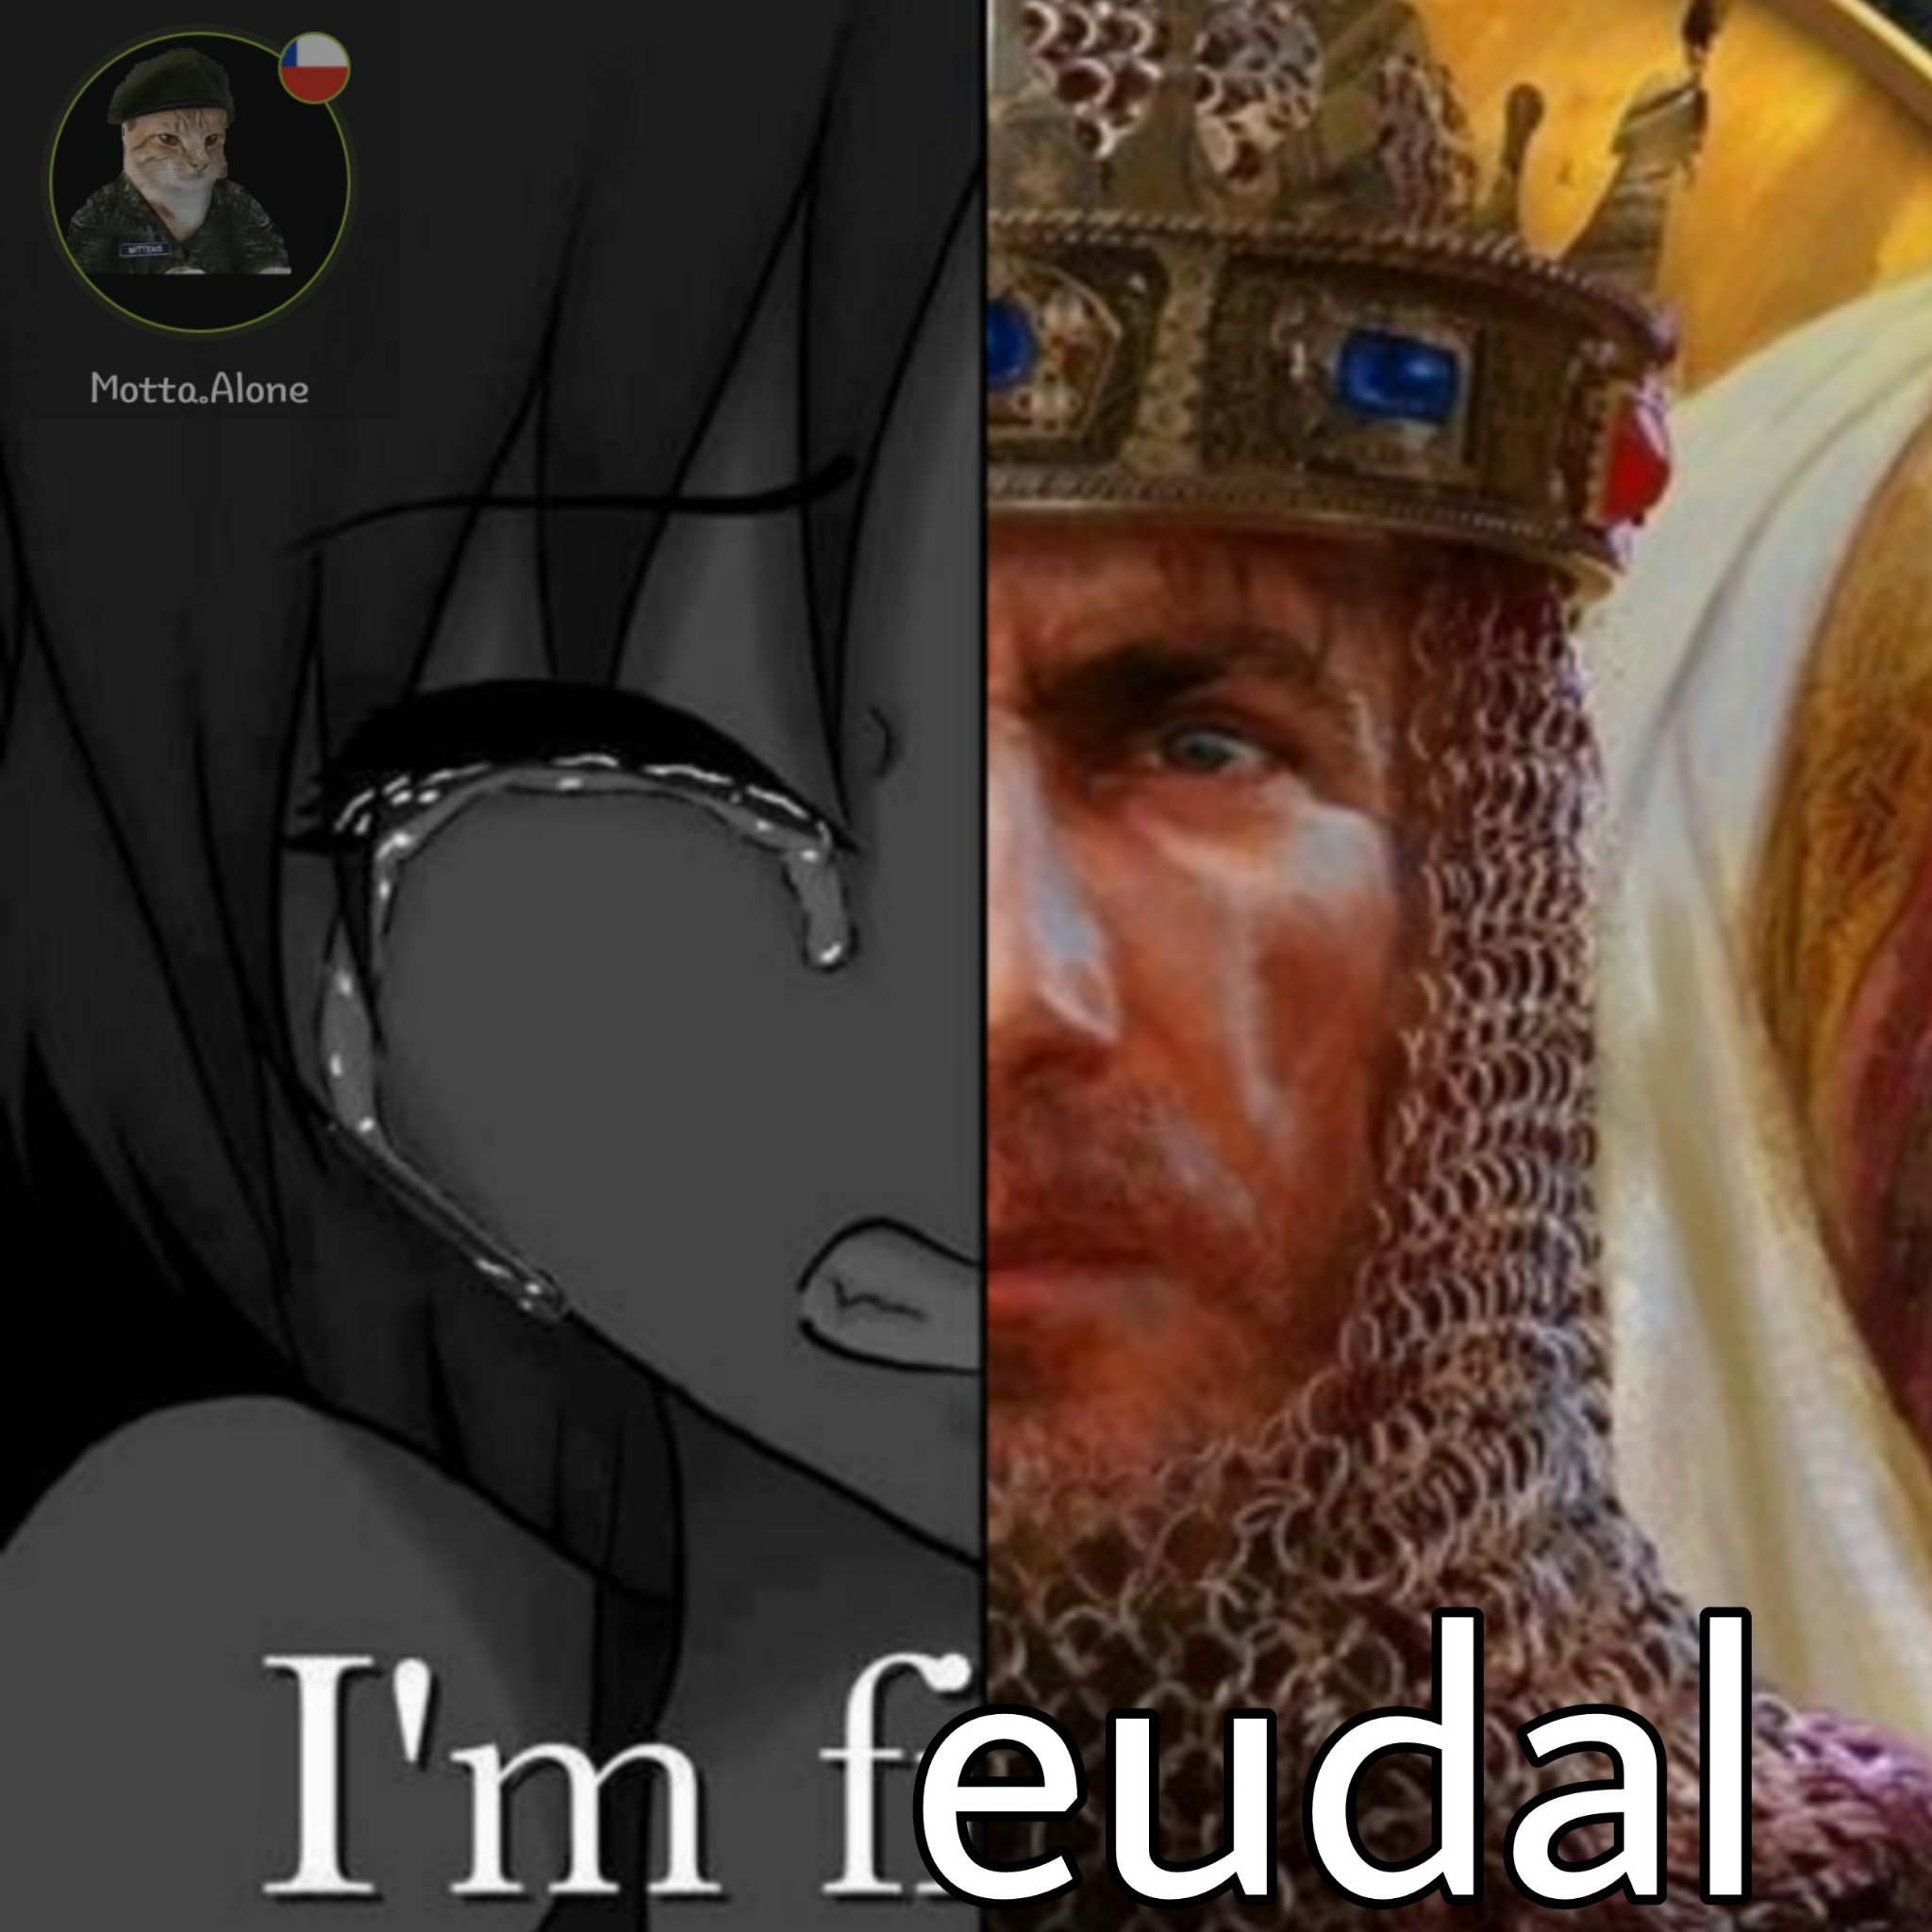 Si soy un vasallo feudal - meme